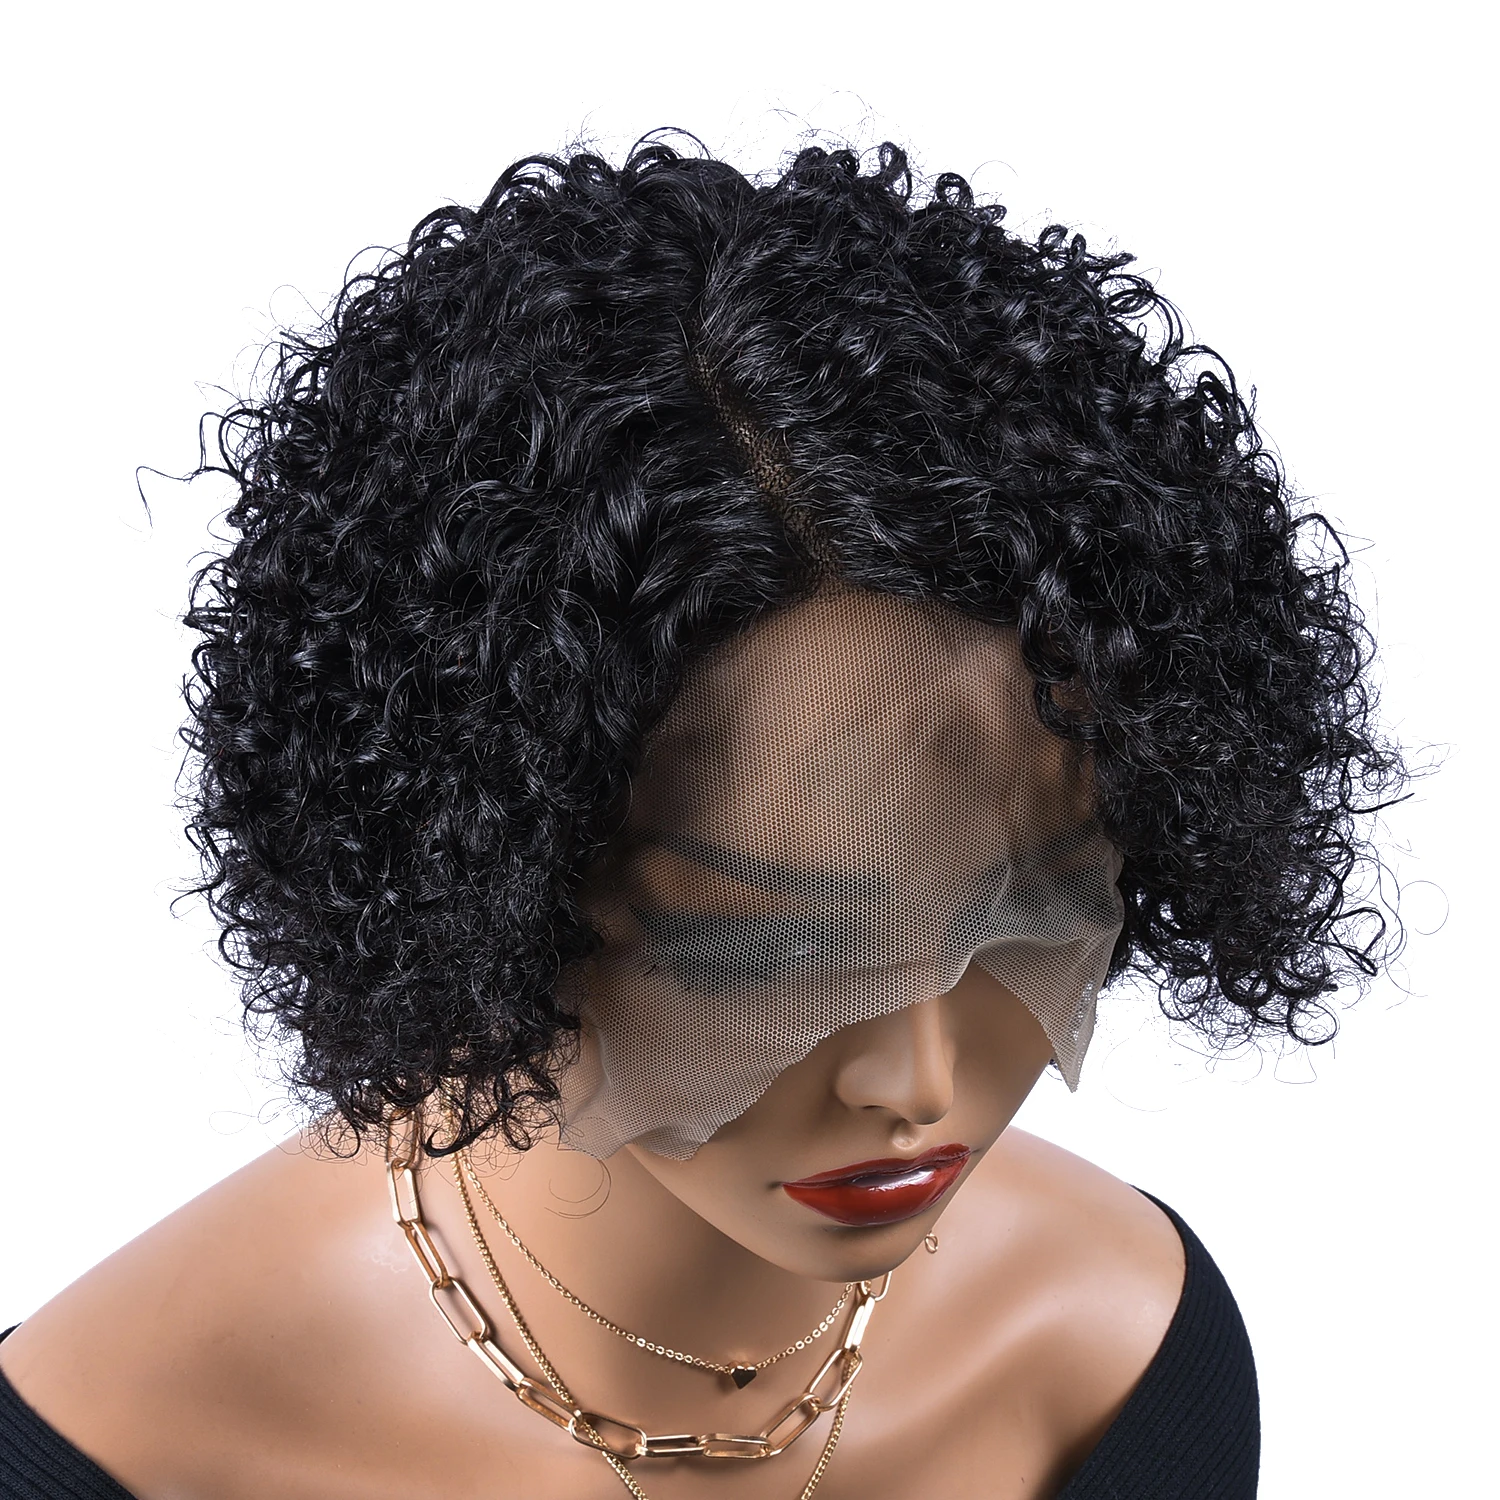 T Lace Curly Pixie Coup Human Hair Wigs T1B / 99J Curly Pixie Cut Wigs Ombre partie latérale Lace Lace Human Hair Wigs pour femme 8 pouces 180%